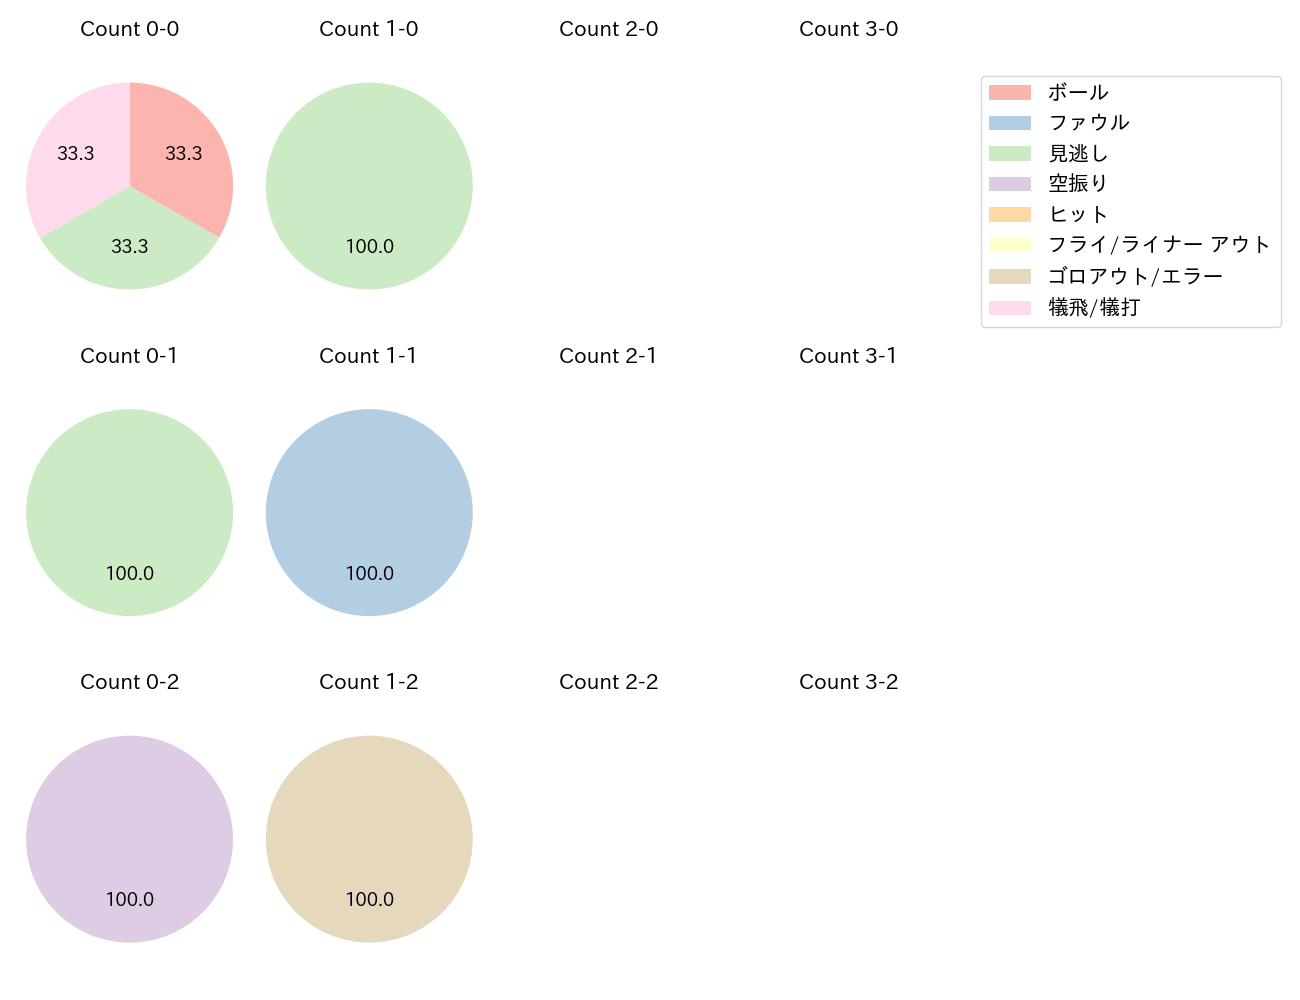 石川 雅規の球数分布(2023年7月)